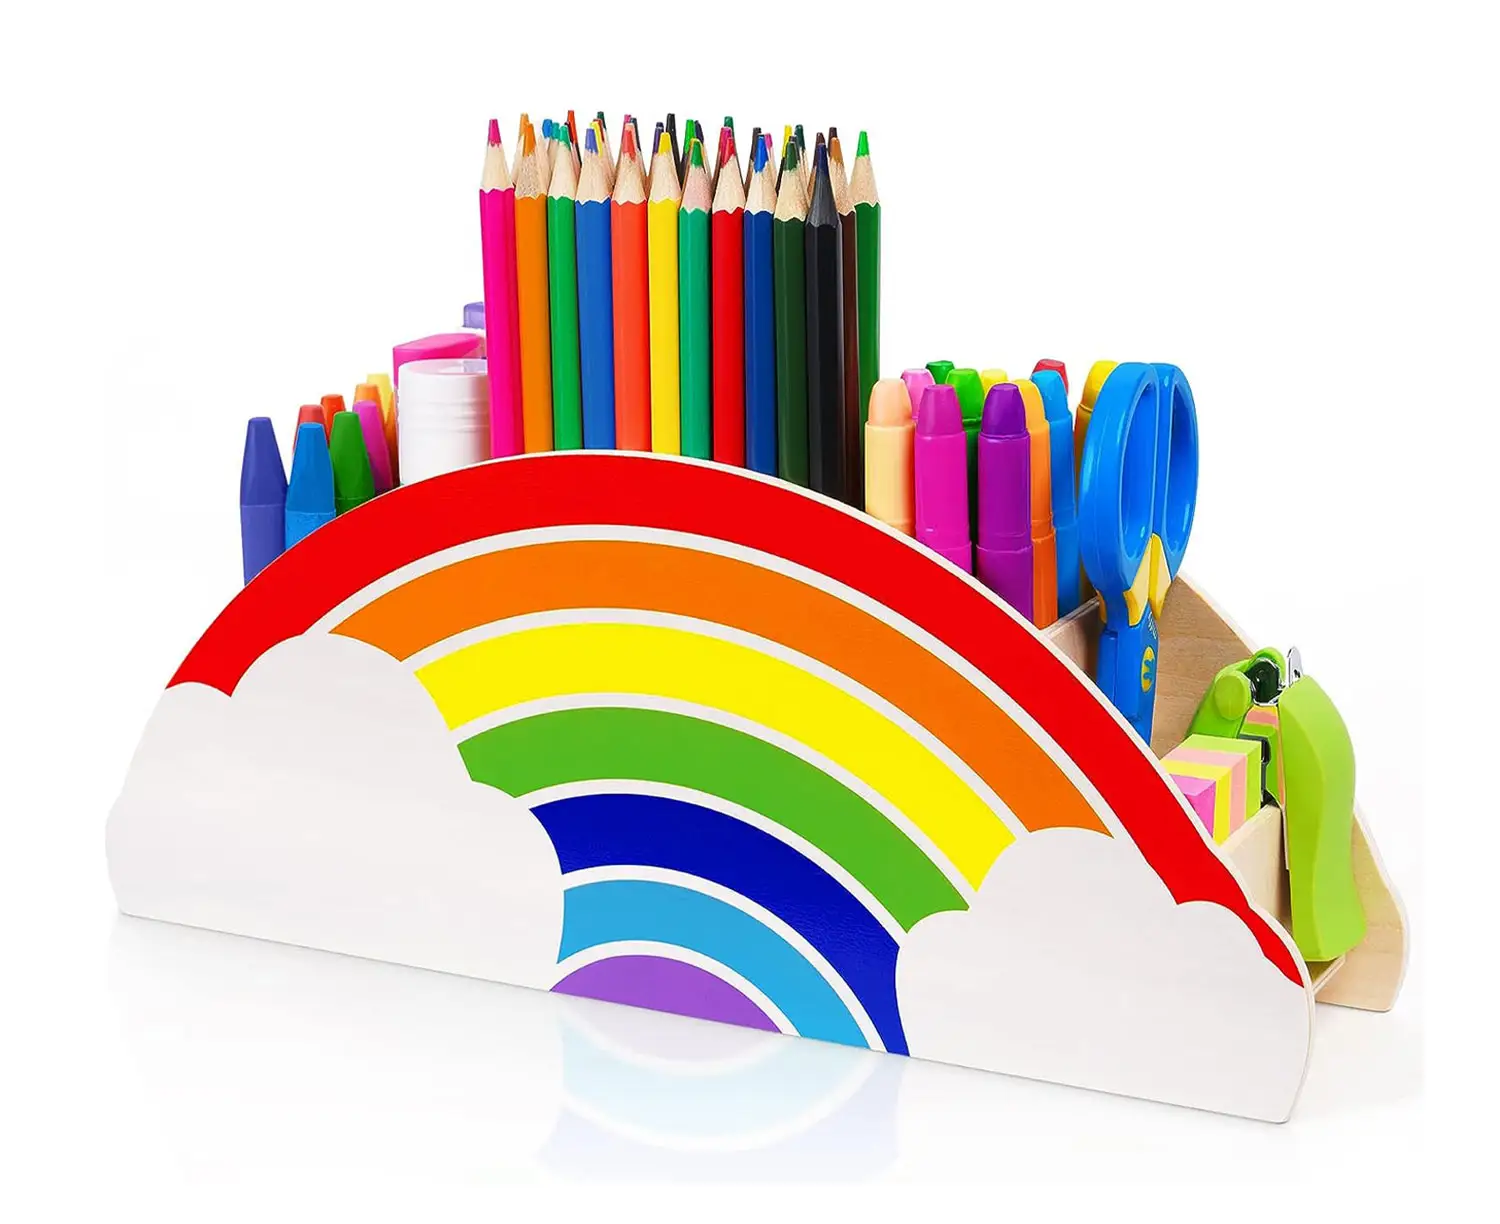 Porta canetas de madeira arco-íris para mesa, porta-canetas multiuso personalizado feito à mão, porta-canetas para sala de aula, porta-canetas para crianças